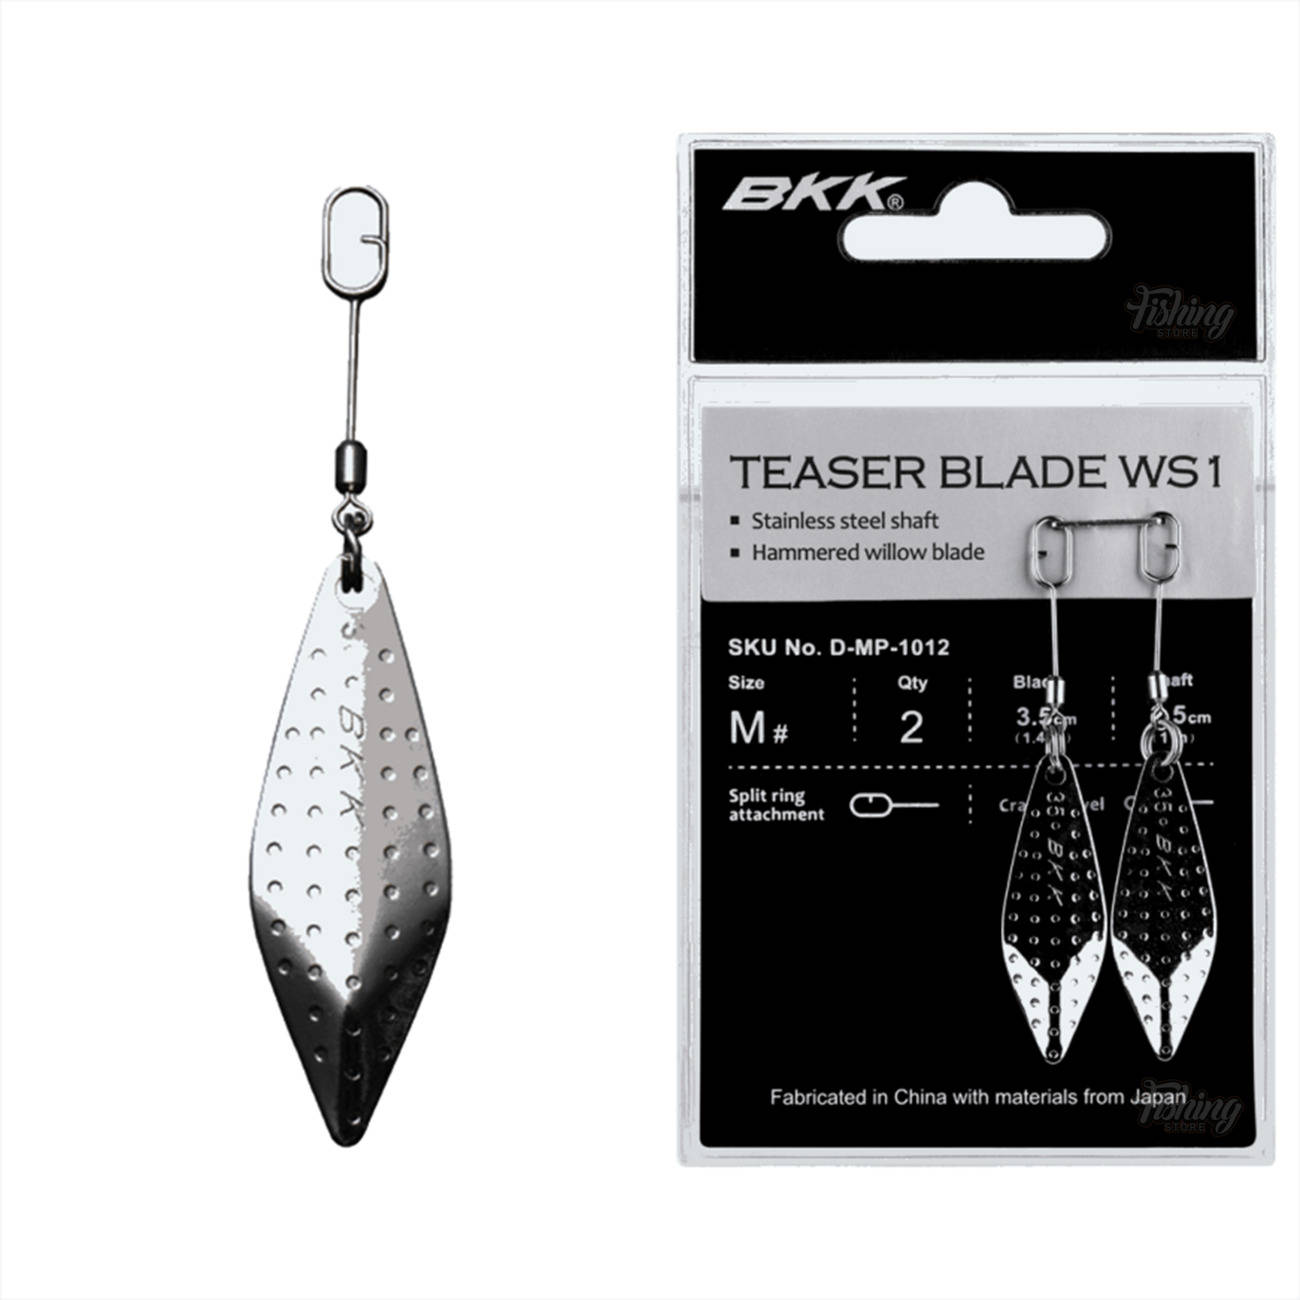 BKK Teaser Blade WS1 rozmiar M op. 2szt